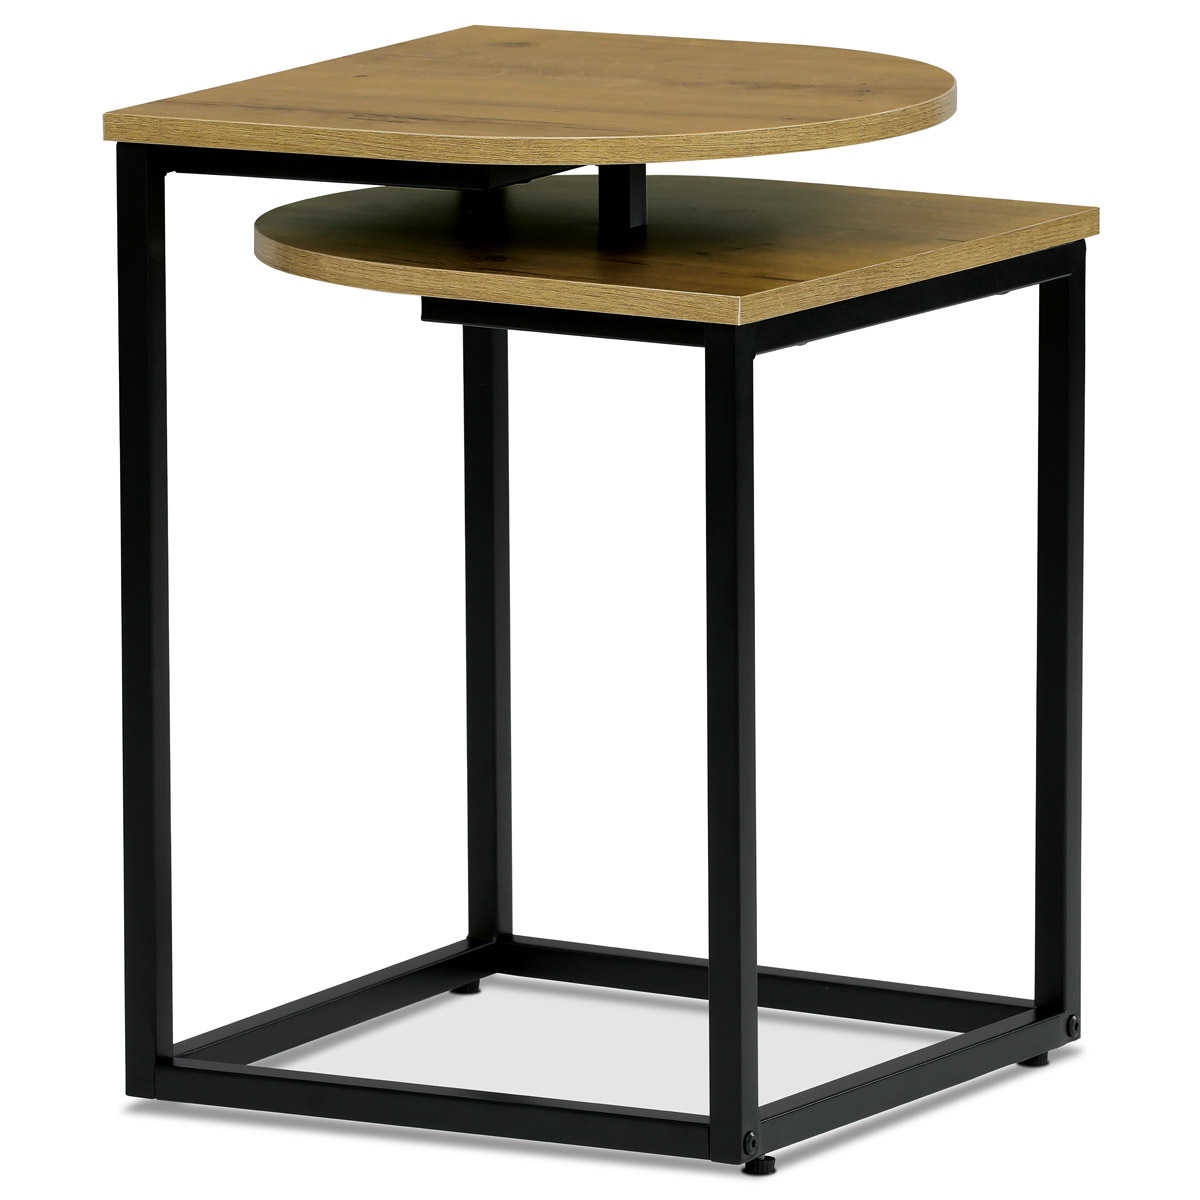 Stůl odkládací, MDF deska s dekorem divoký dub, černý kov.